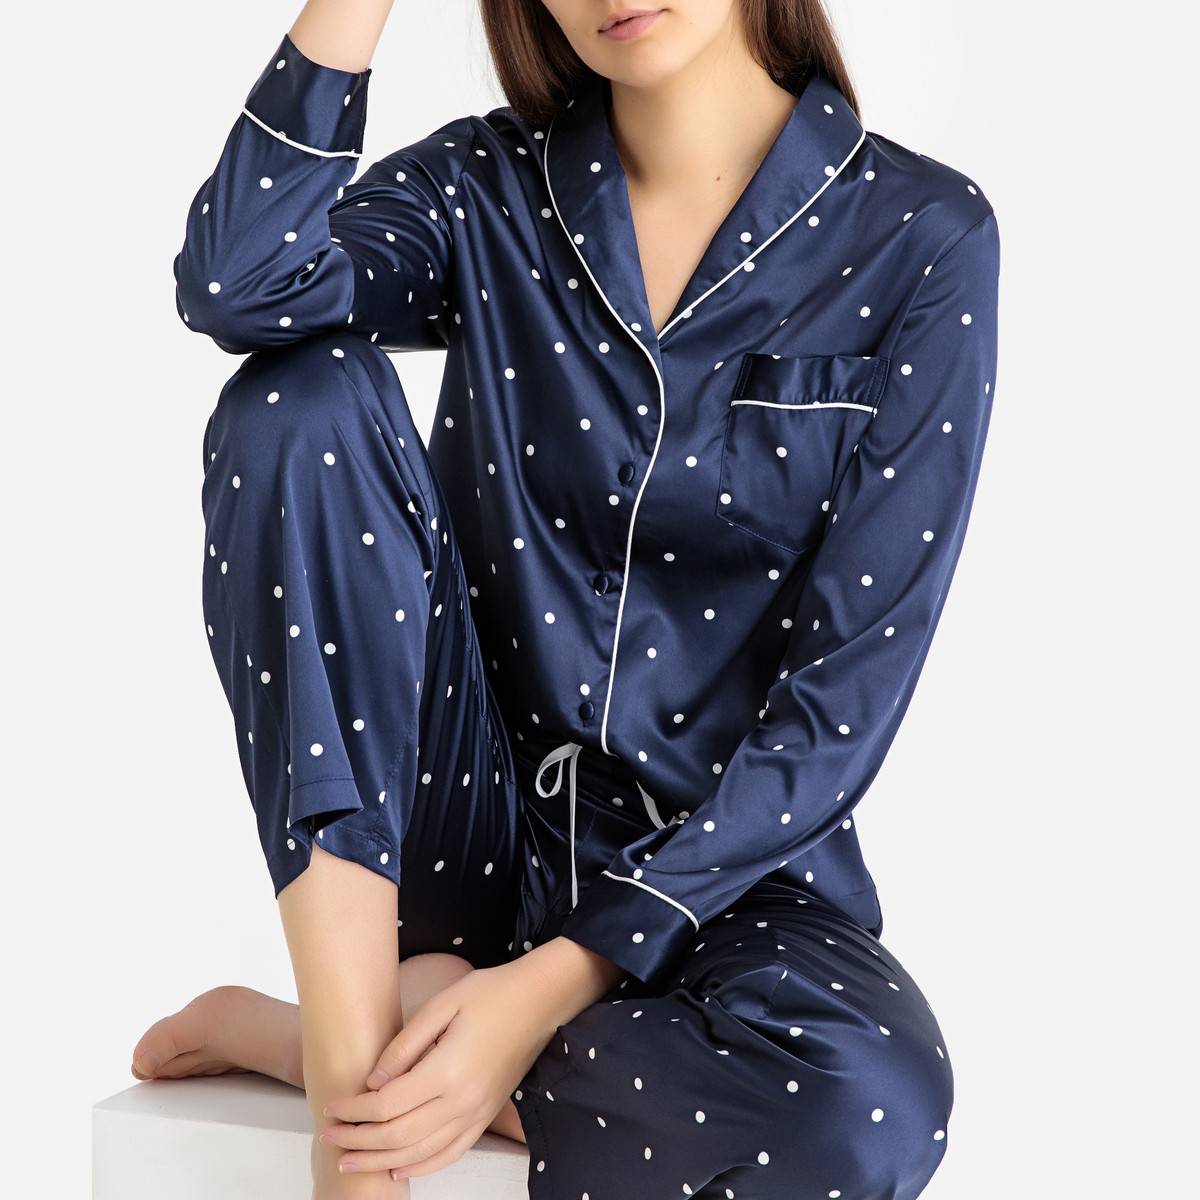 Купить пижаму с рукавами. La Redoute пижама. Женская пижама ля редут синяя. Жена в пижаме. Модные пижамы.